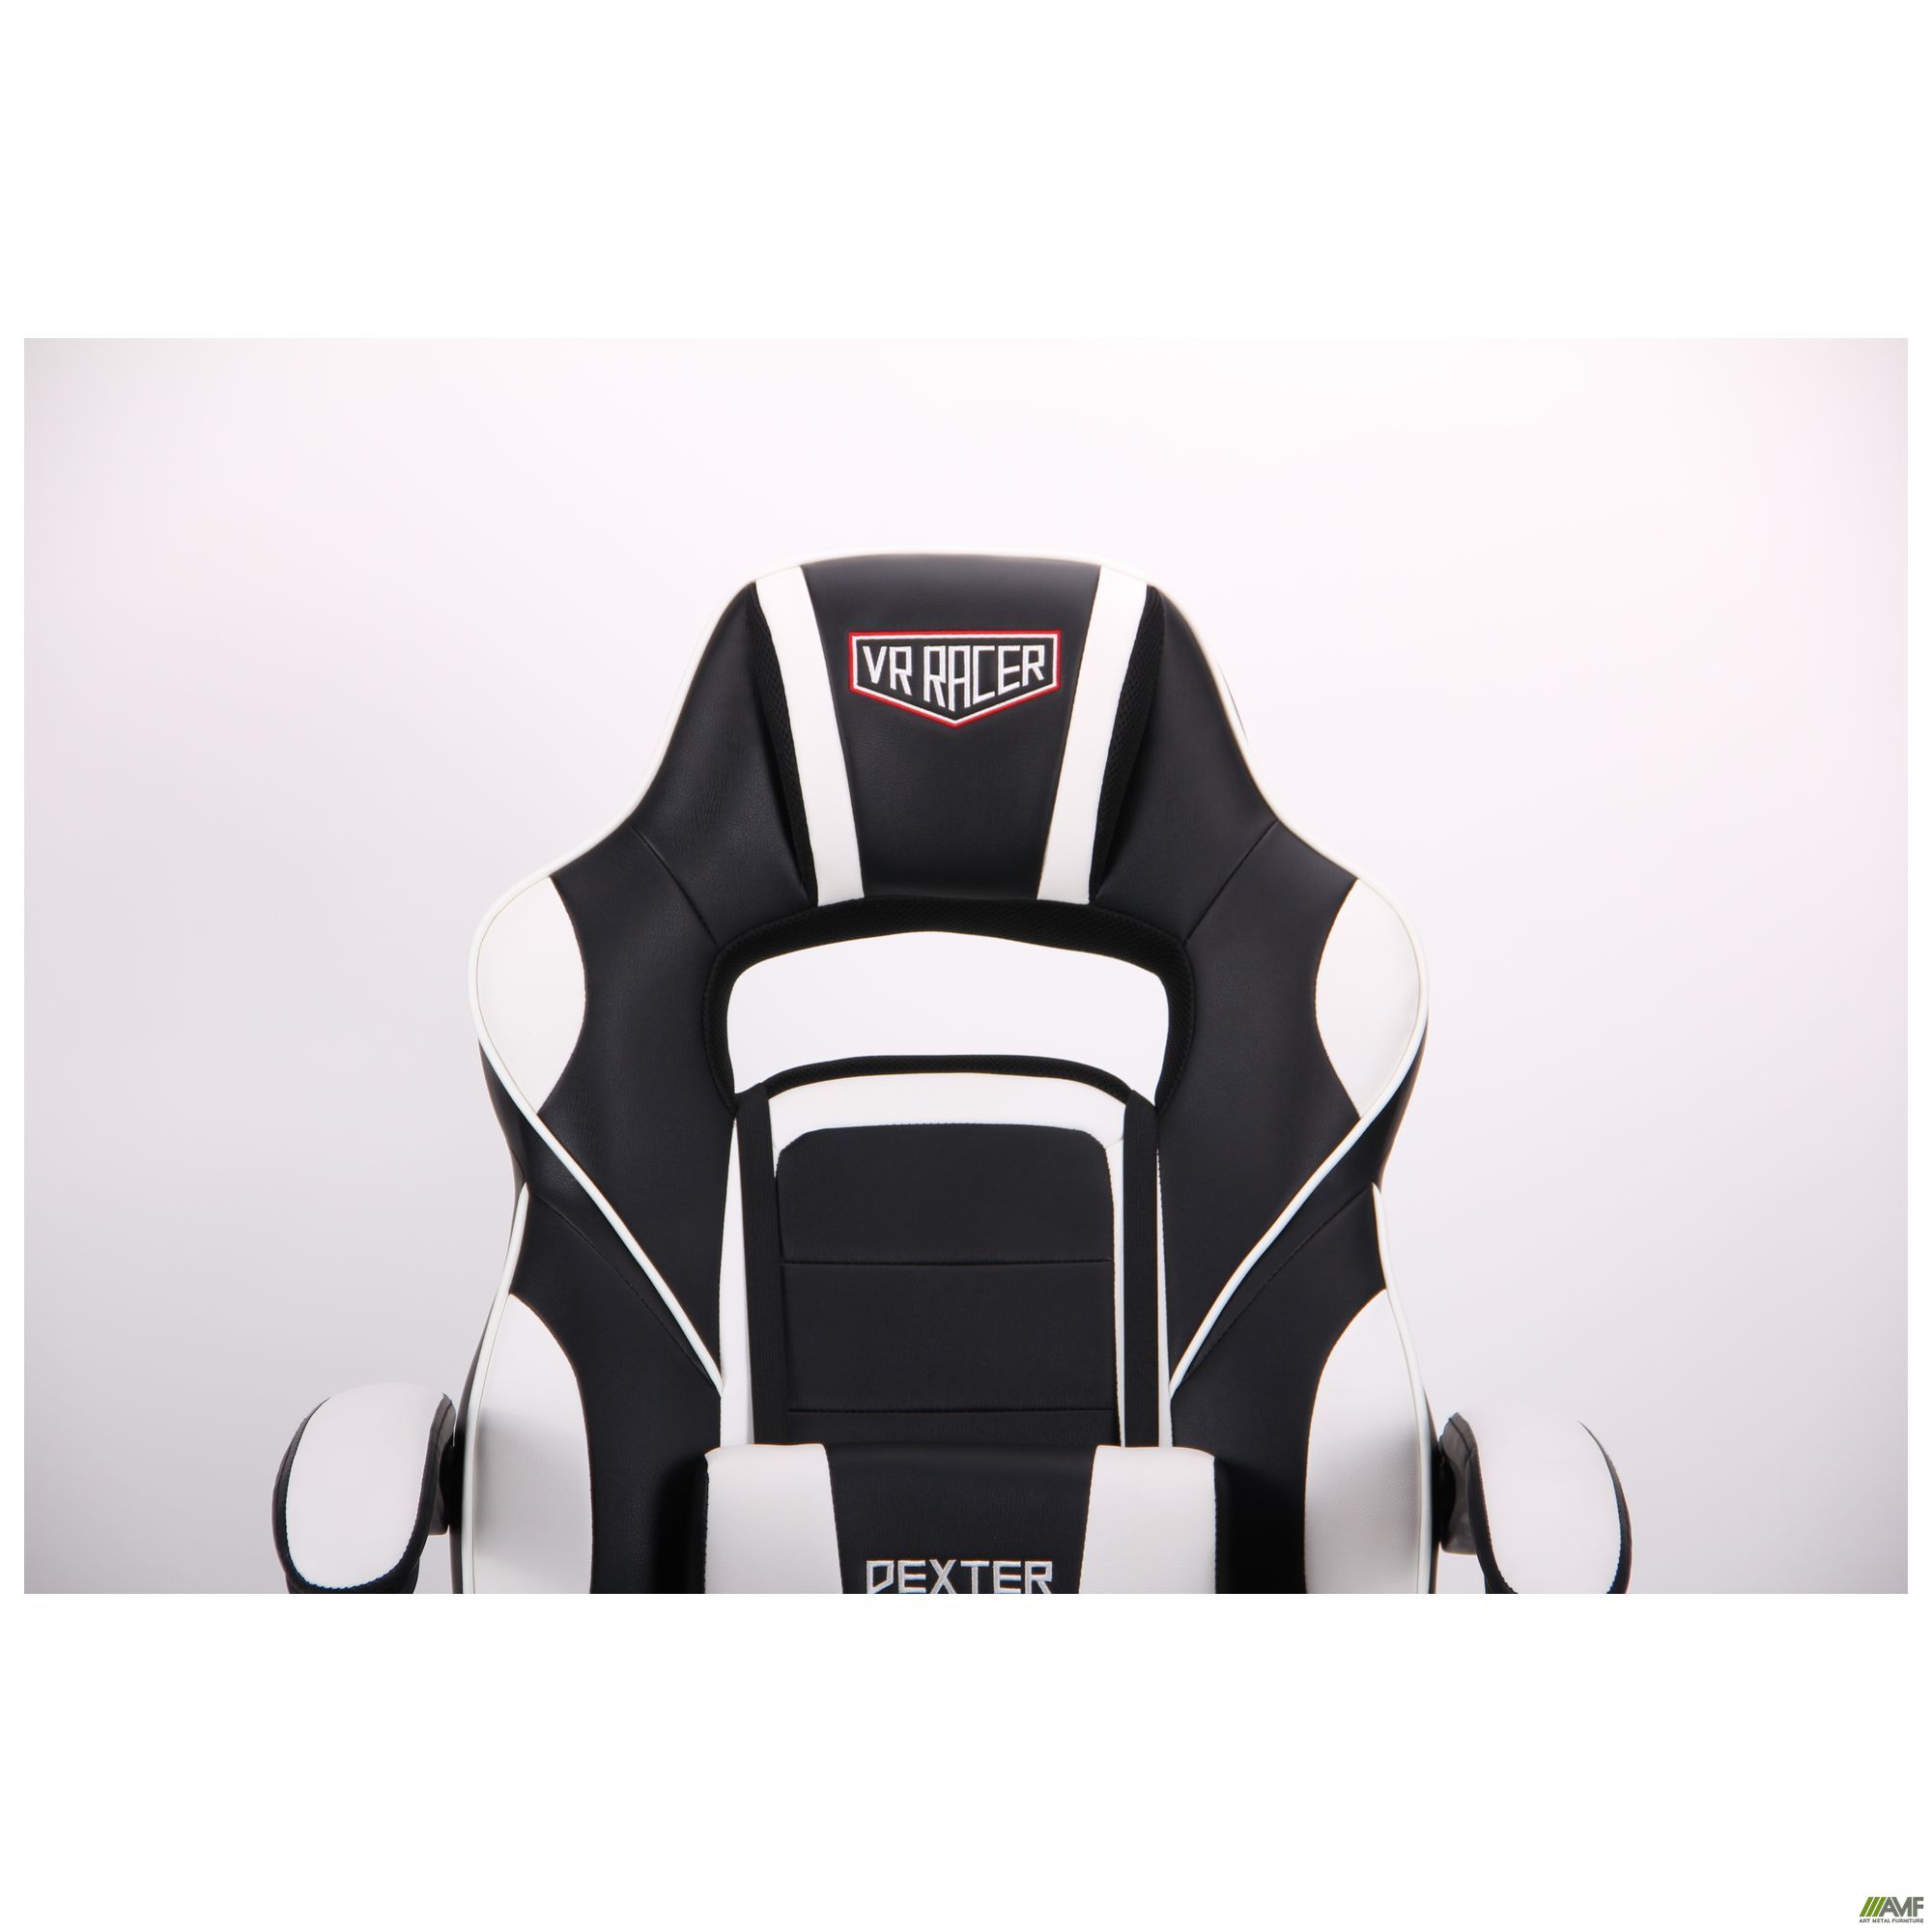 Фото 8 - Кресло VR Racer Dexter Vector черный/белый 